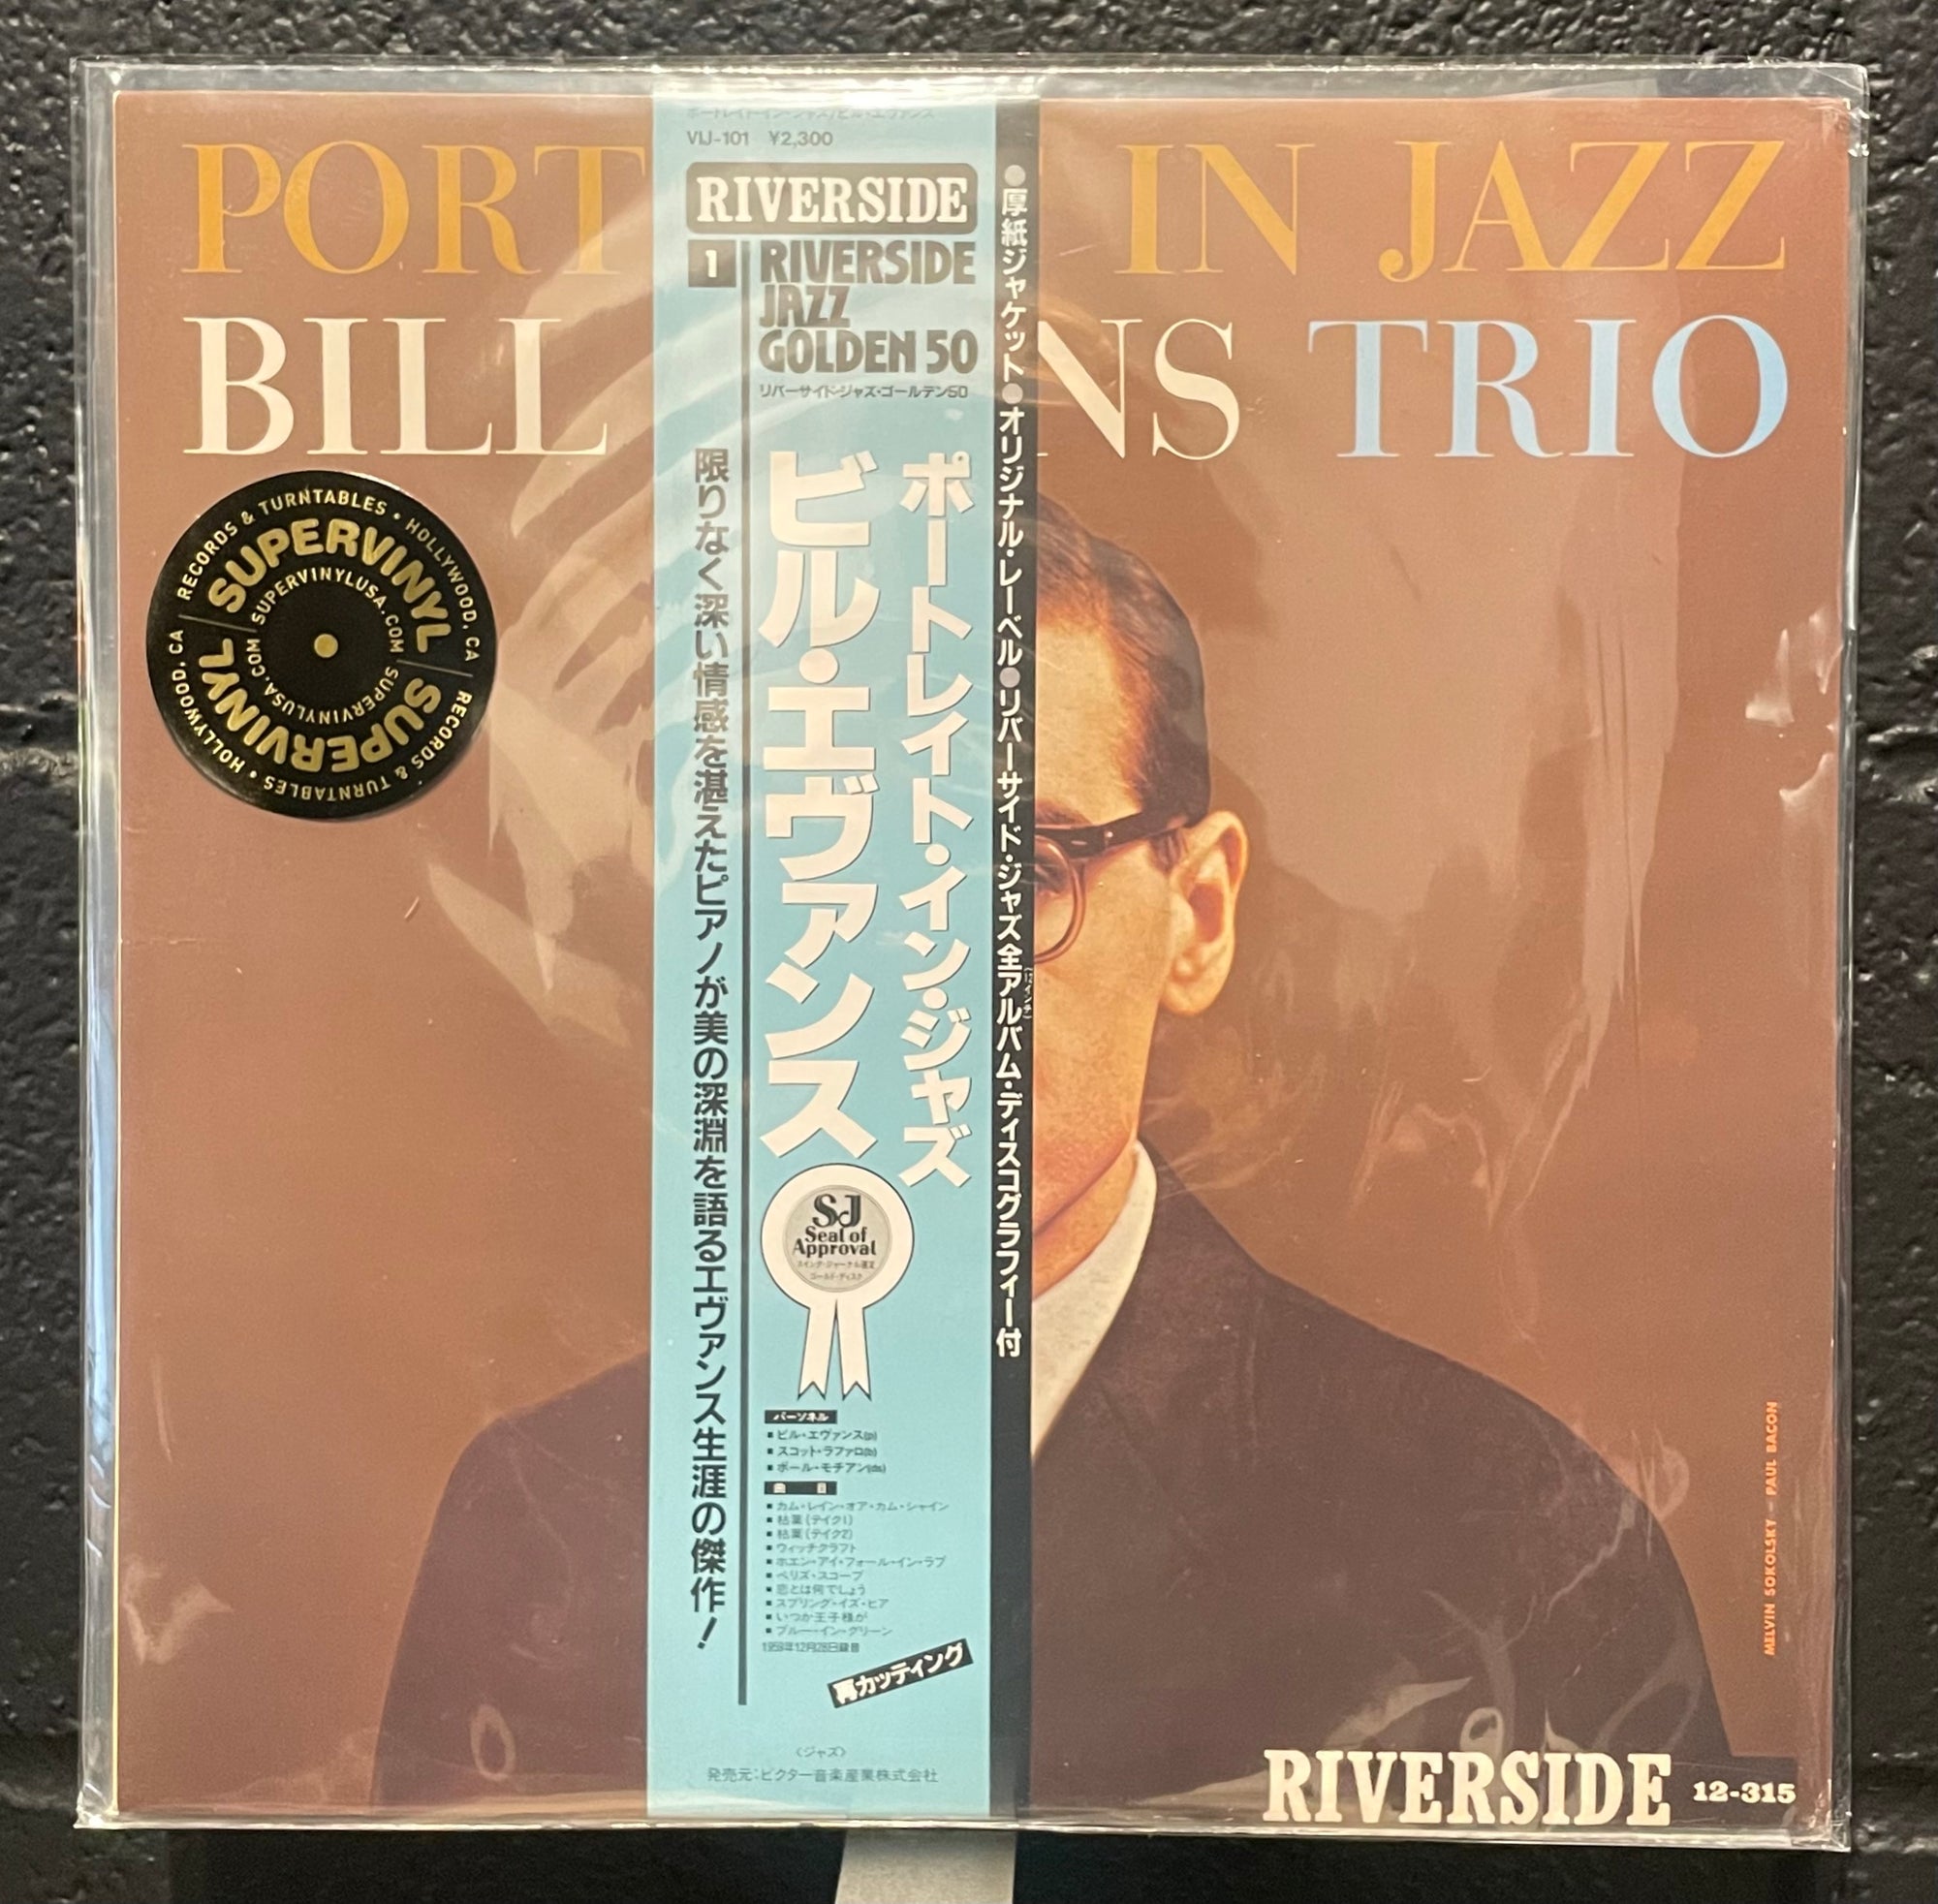 Portrait in Jazz (Japan LP with obi)